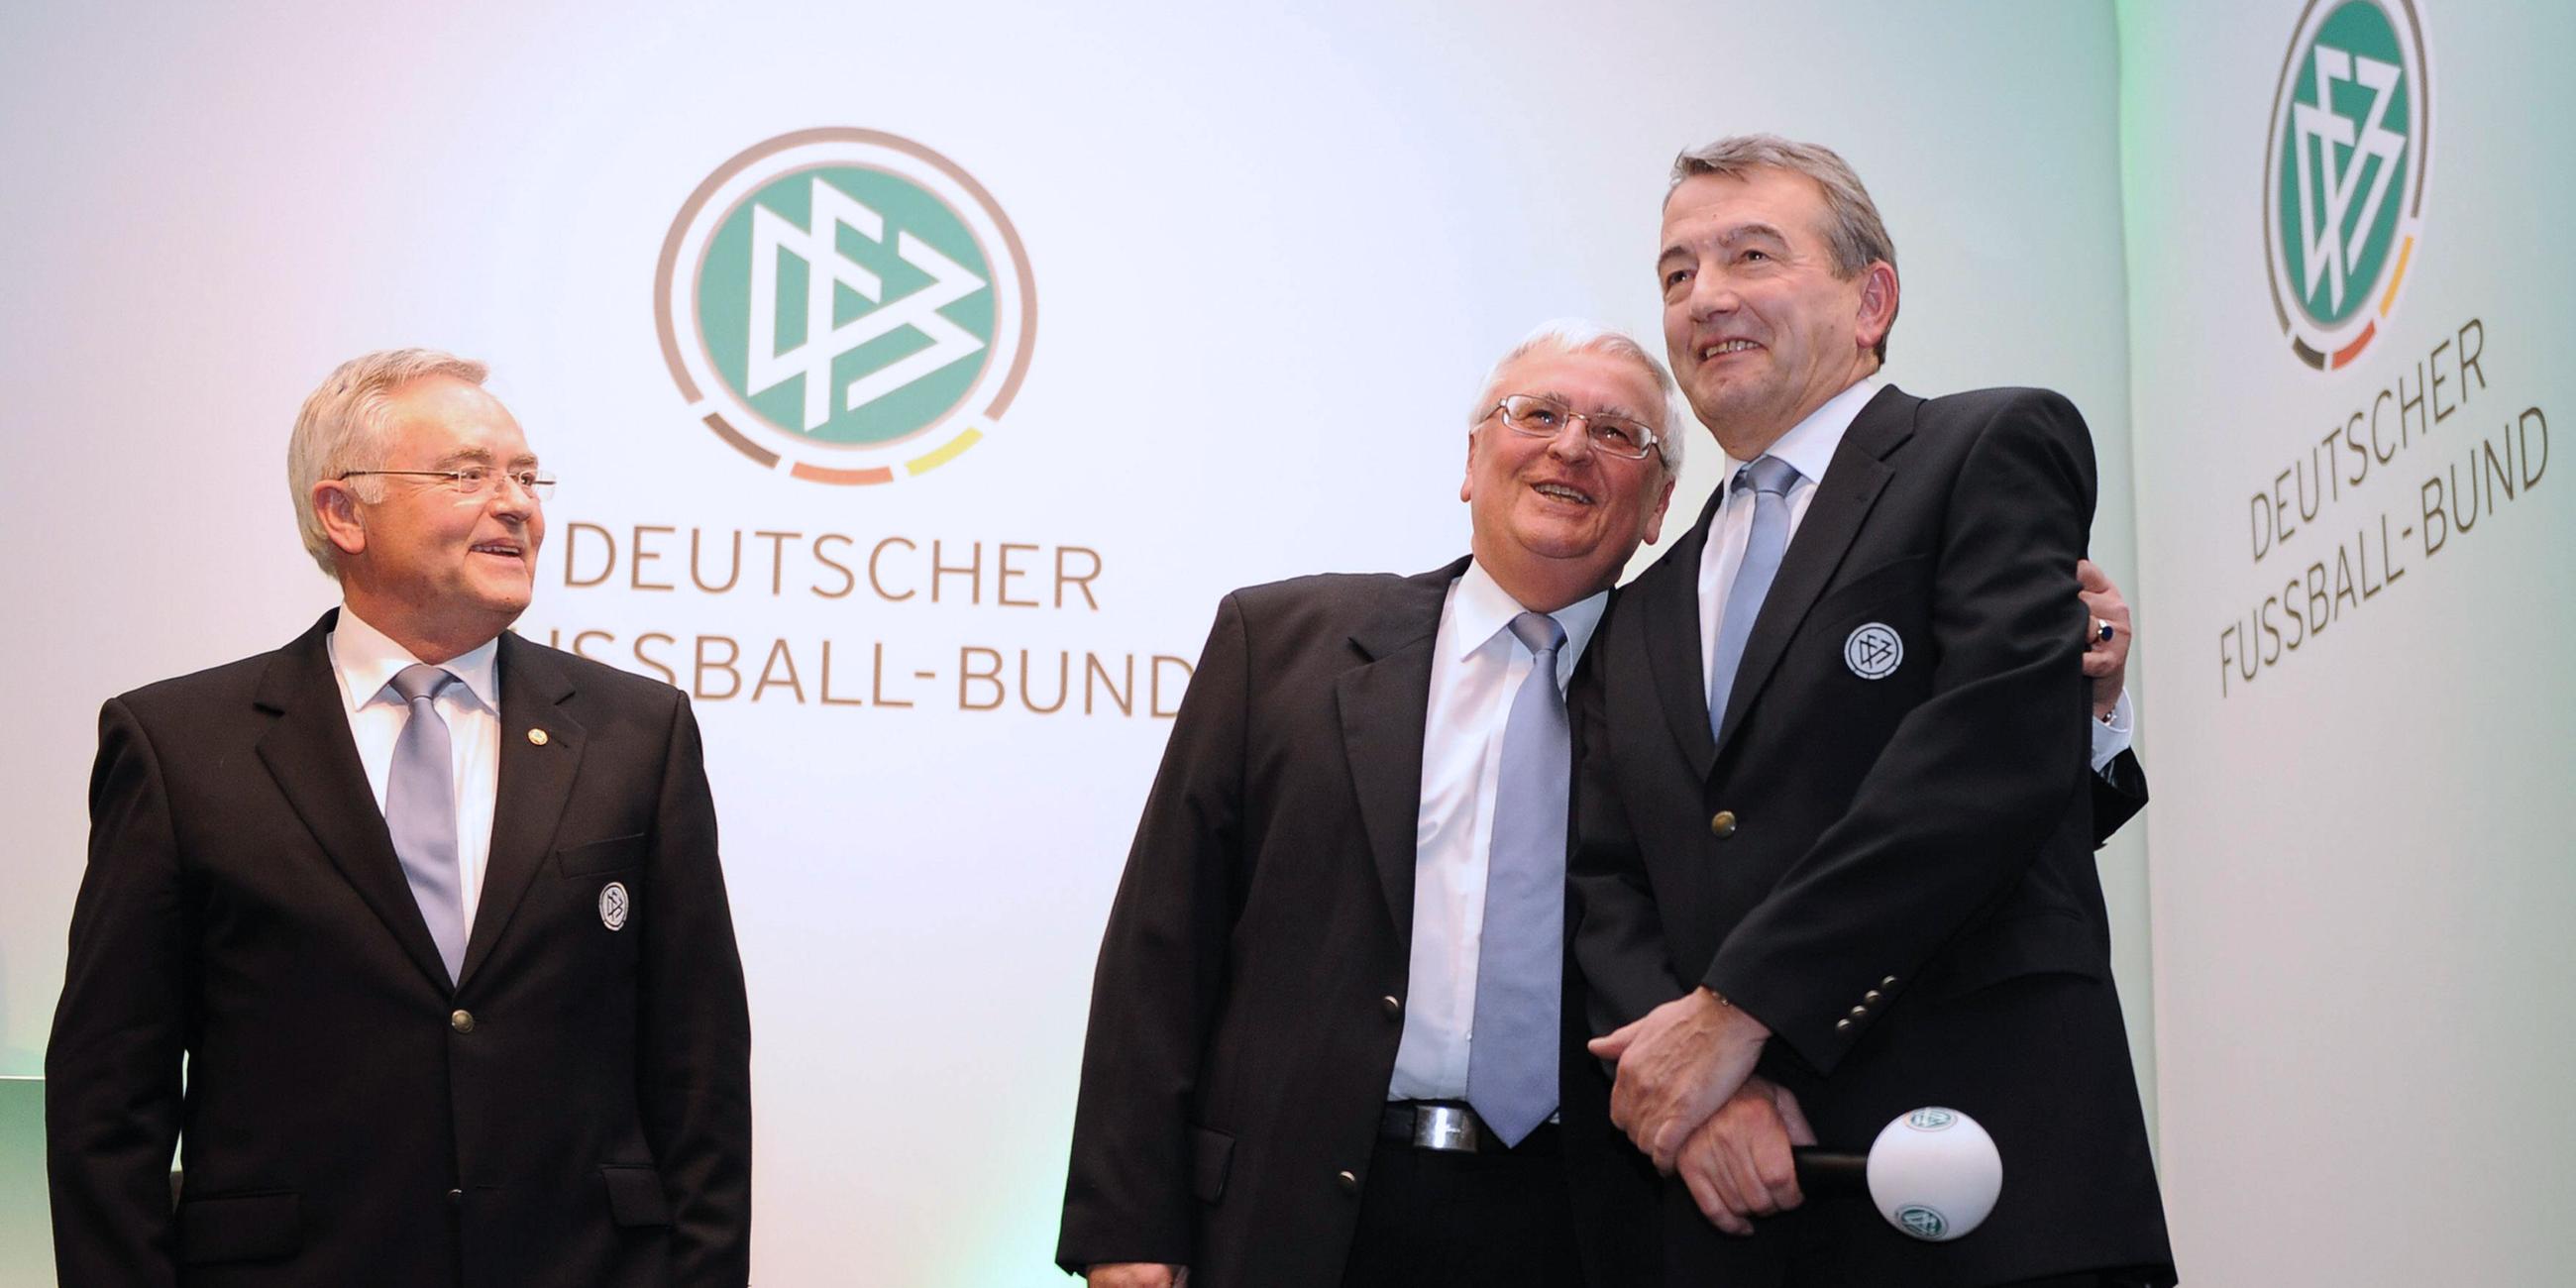 Horst R. Schmidt, der ehemalige DFB-Präsident Theo Zwanziger und der neu gewählte DFB-Präsident Wolfgang Niersbach stehen während der DFB-Bundesversammlung auf der Bühne (Archiv 2012)